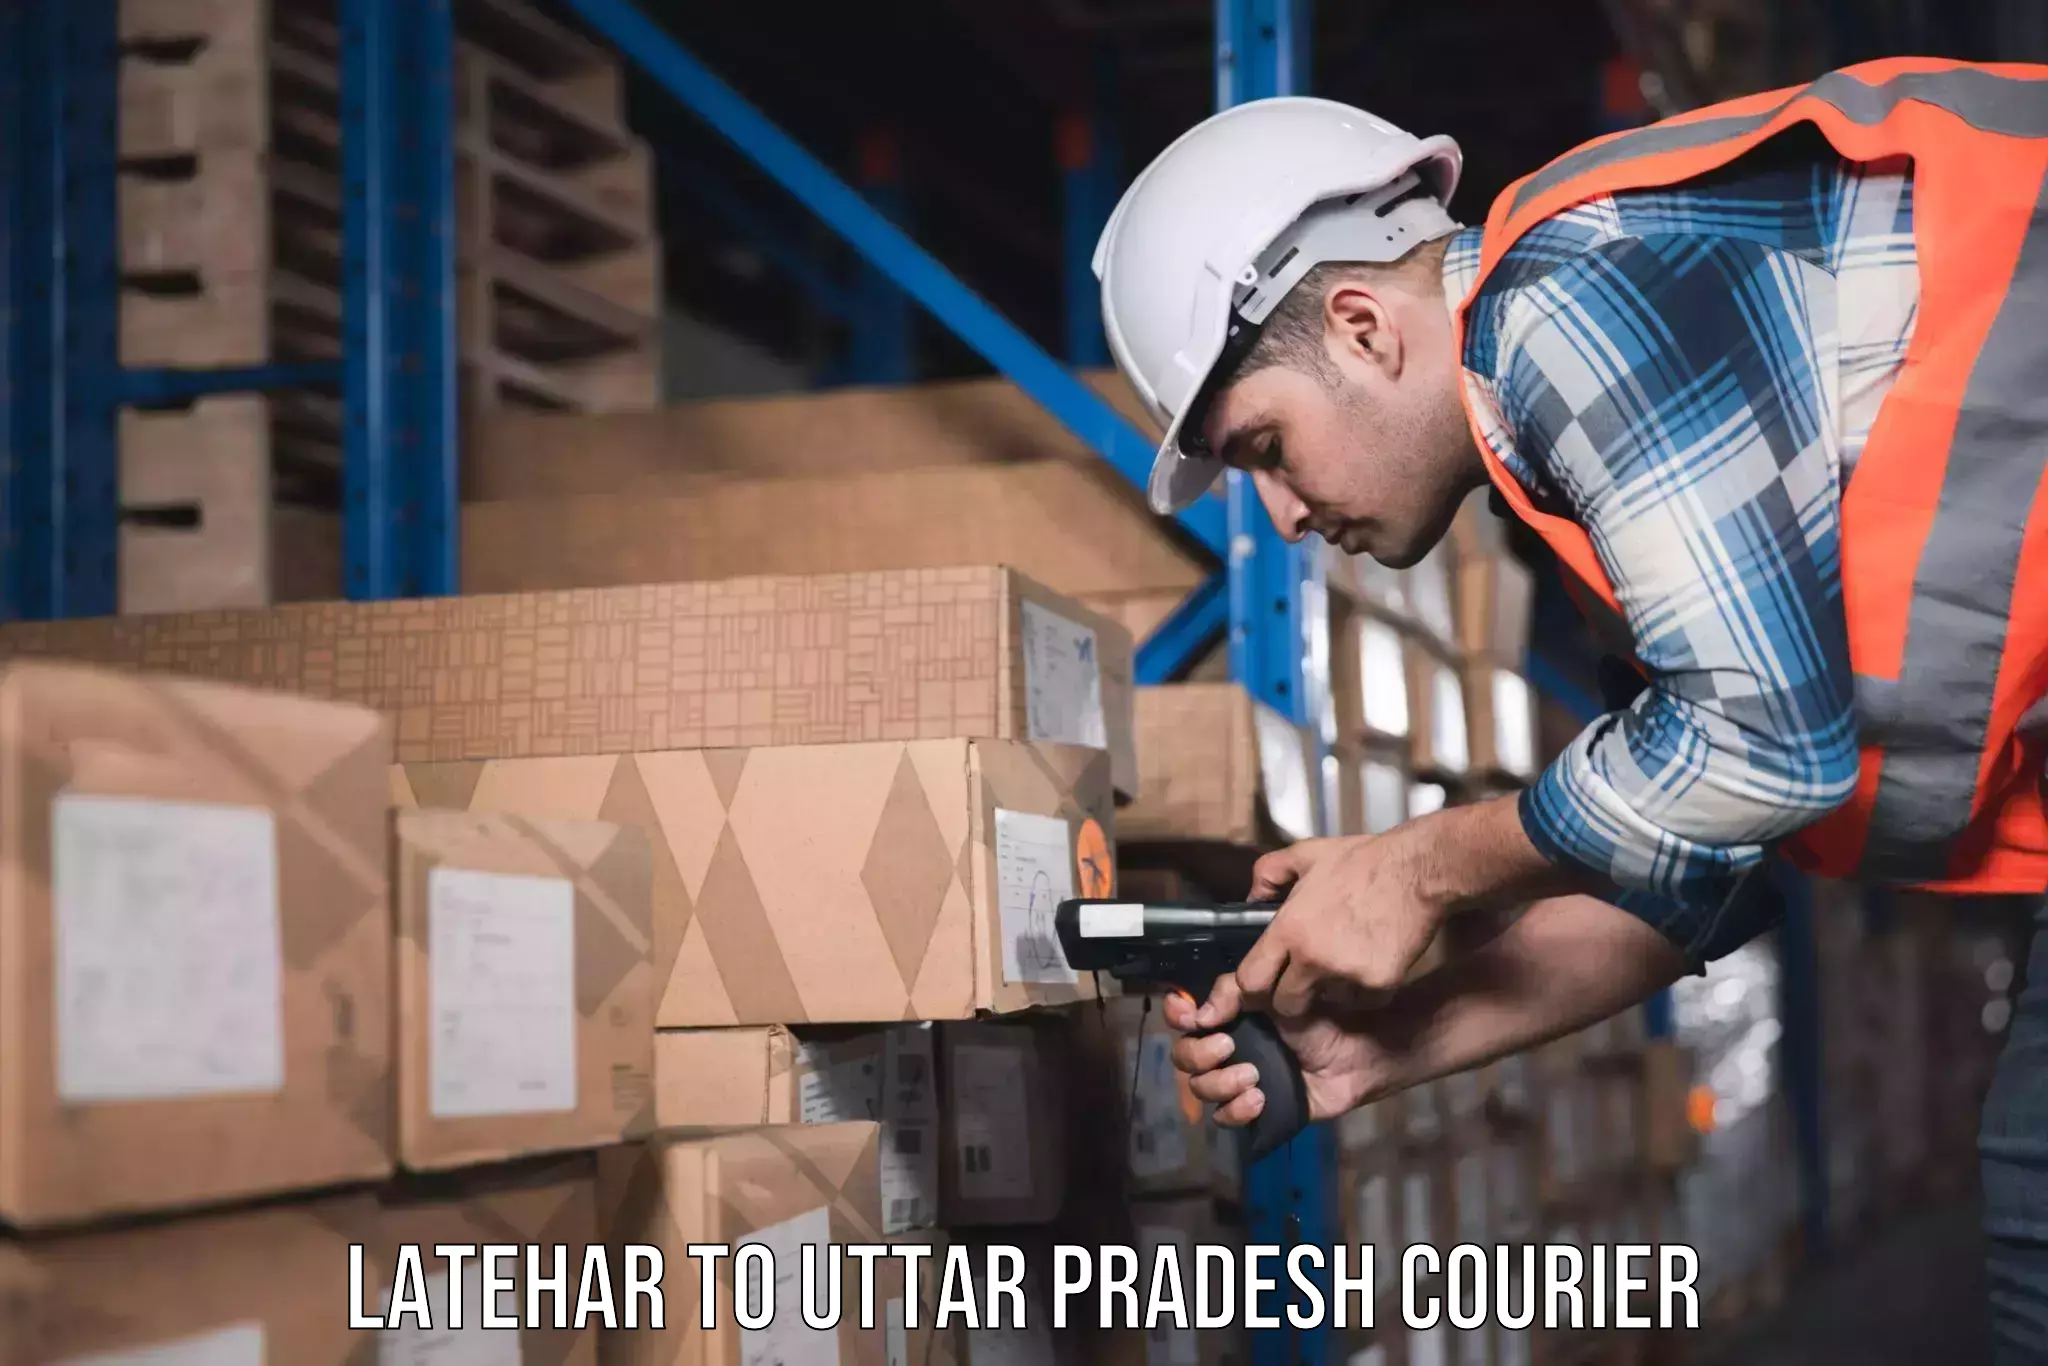 Furniture transport professionals Latehar to Harpalpur